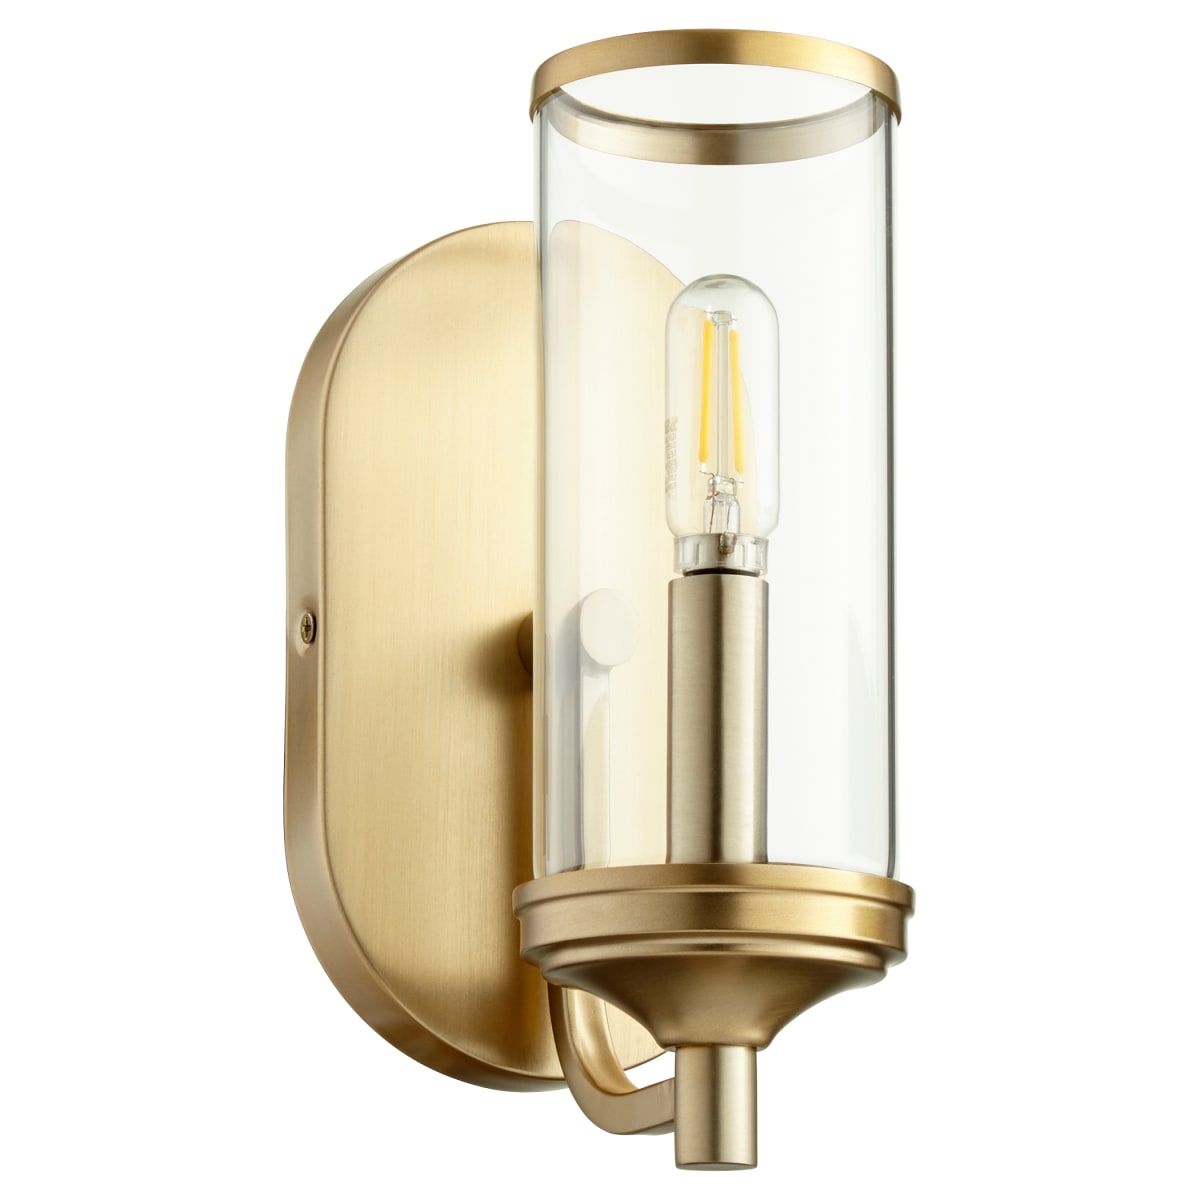 Quorum Collins 5044-1-80 Wall Light Fixture - Aged Brass